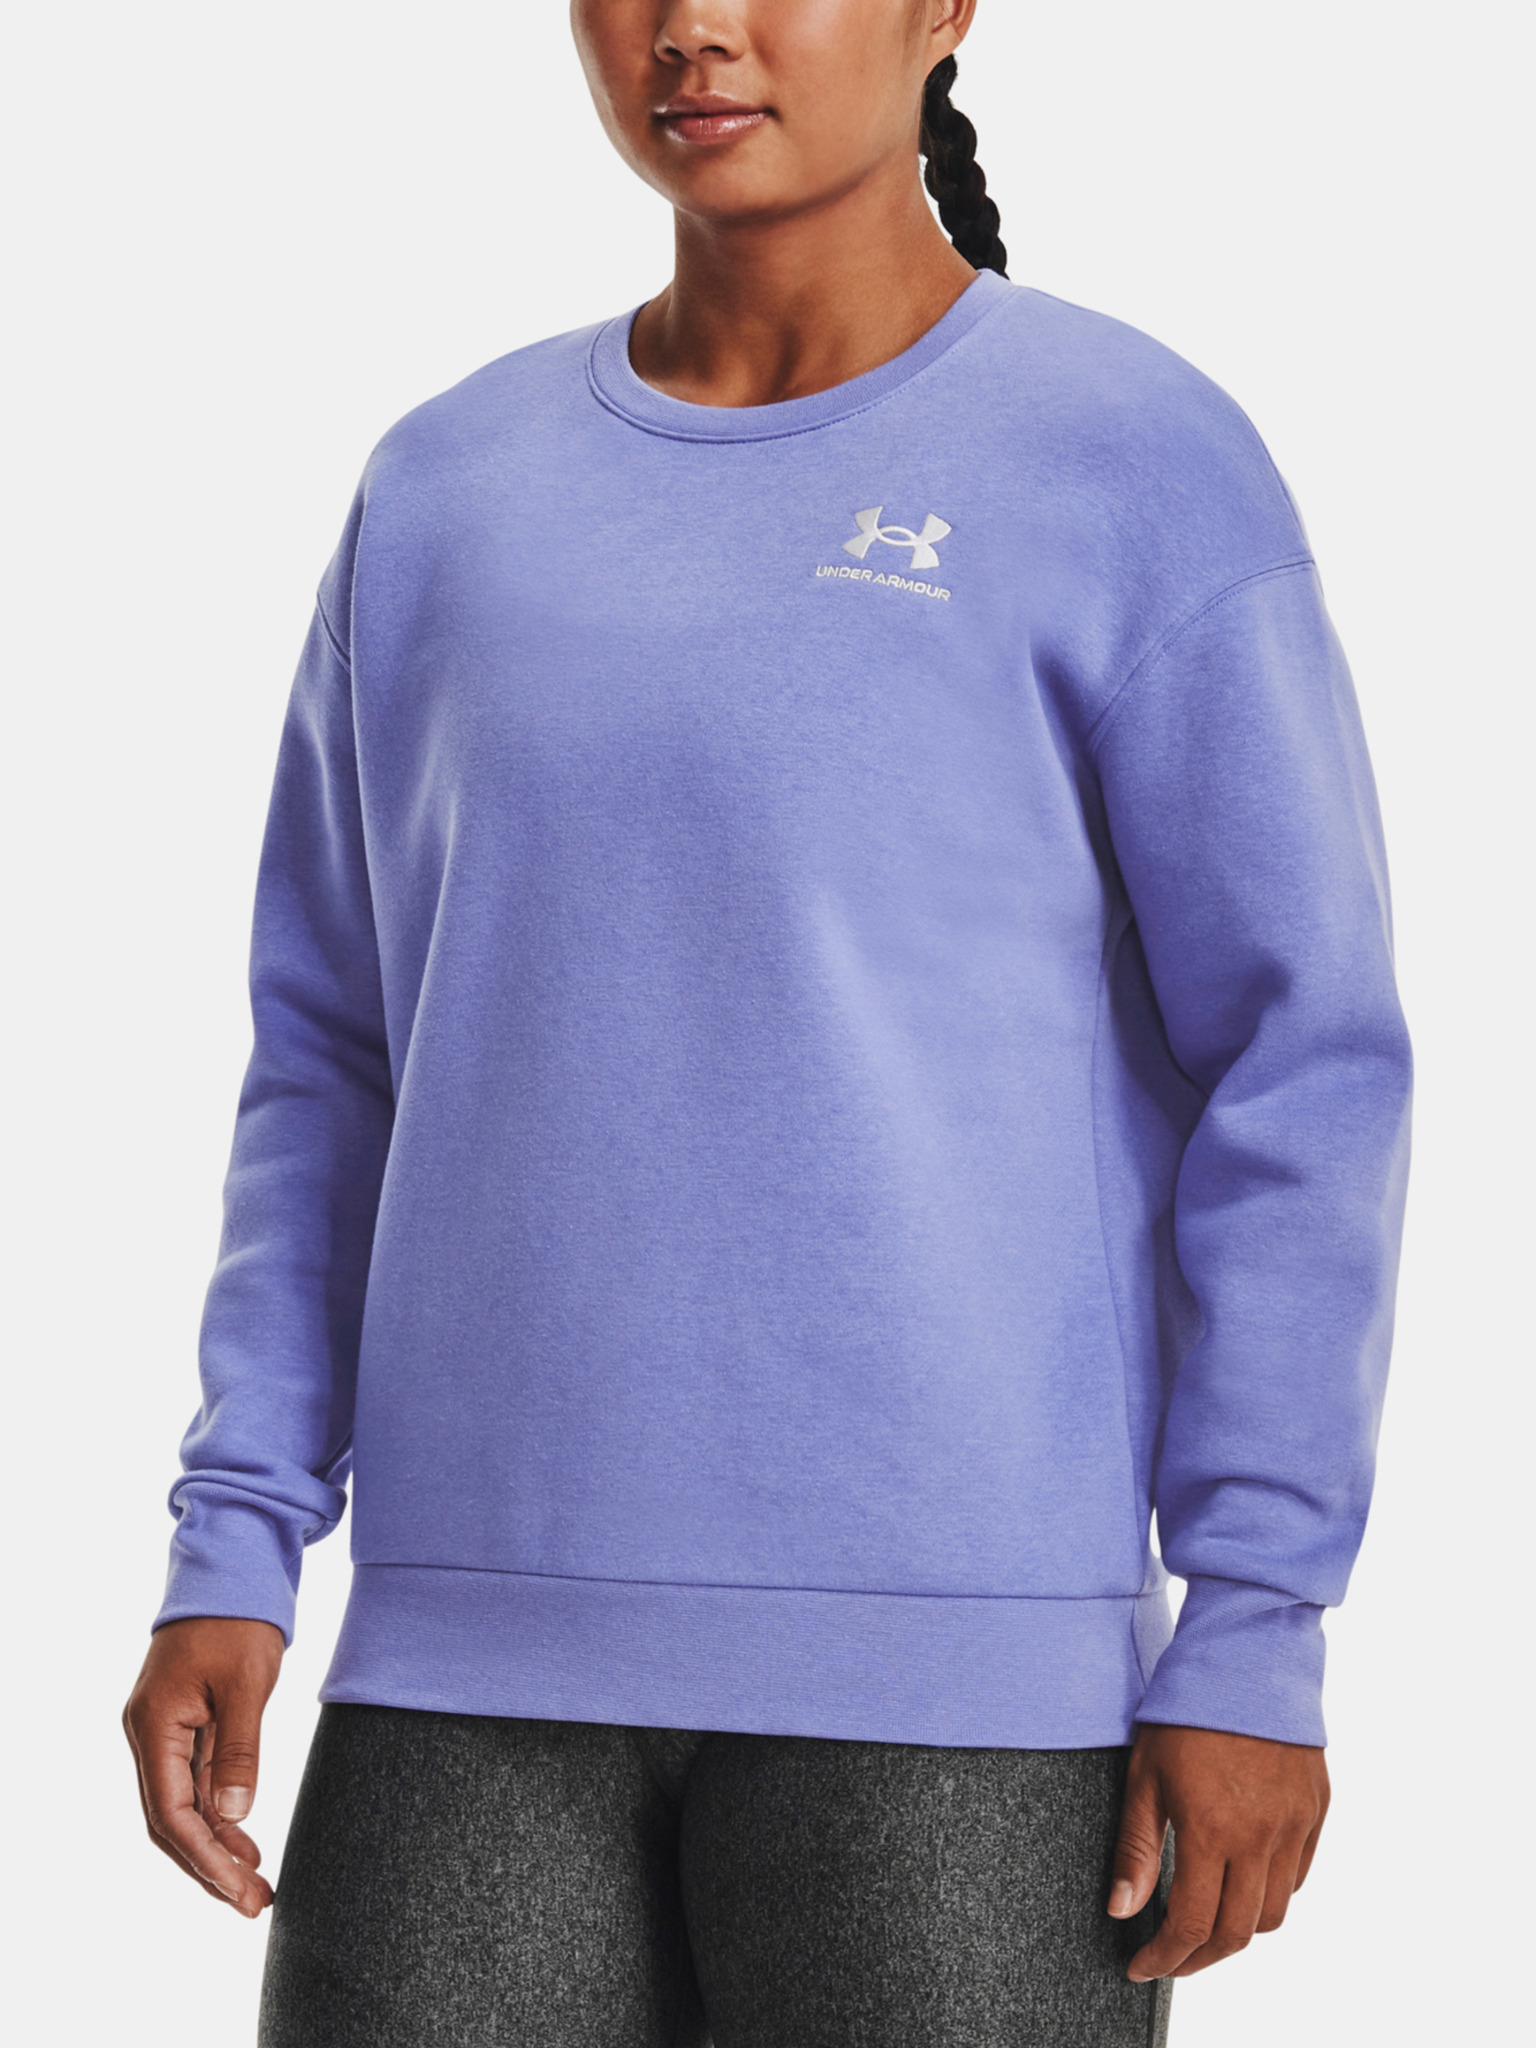 Under Armour - Essential Fleece Crew Sweatshirt